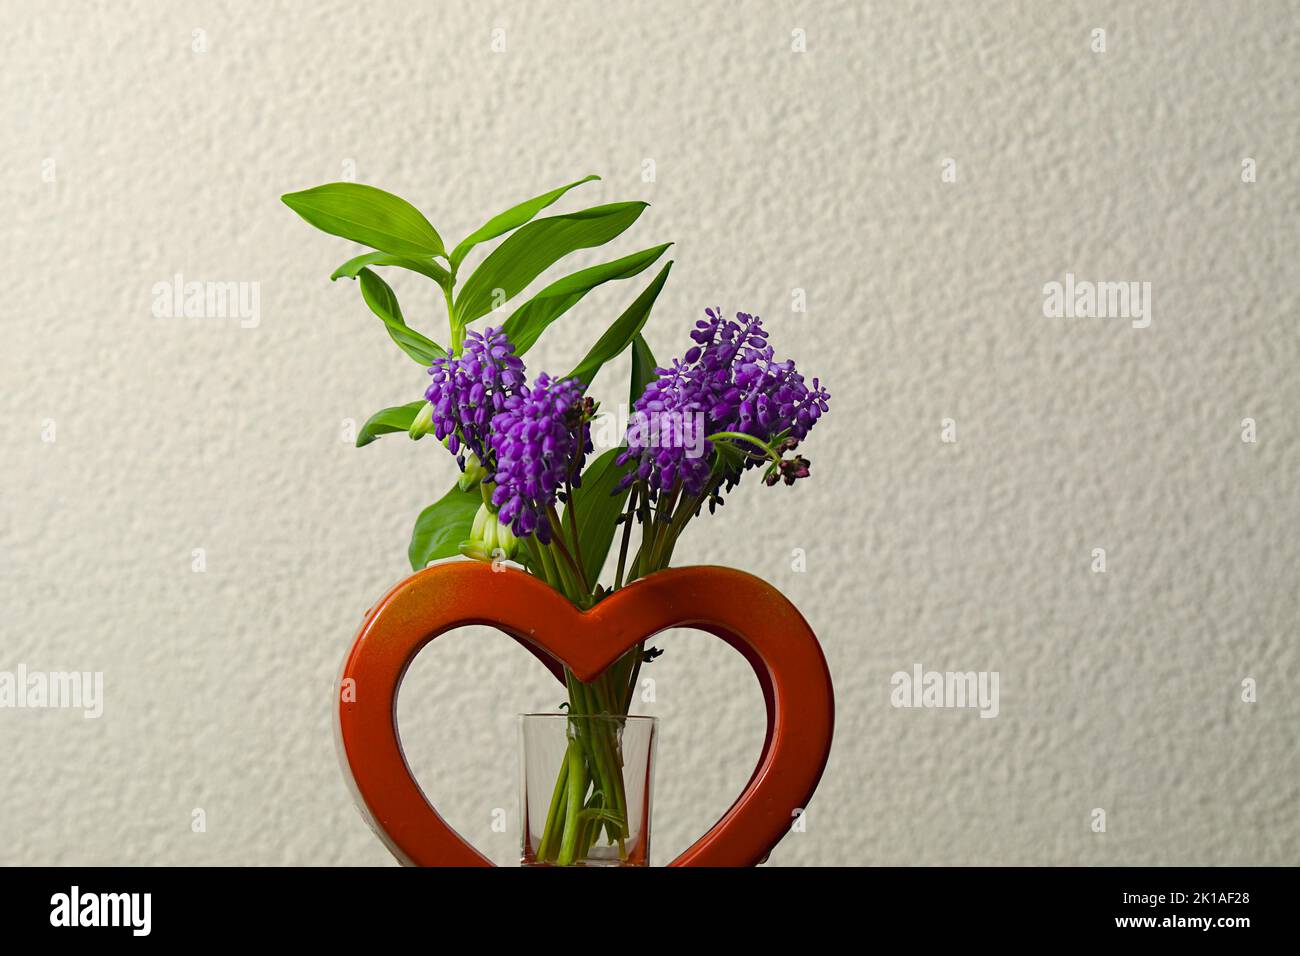 Die Hyazinthe (Hyacinthus) gehört zur Pflanzenfamilie der Spargelgewächse und zählt zu den Frühblühern. Die krautige Pflanze bildet traubige Blütenstä Foto de stock